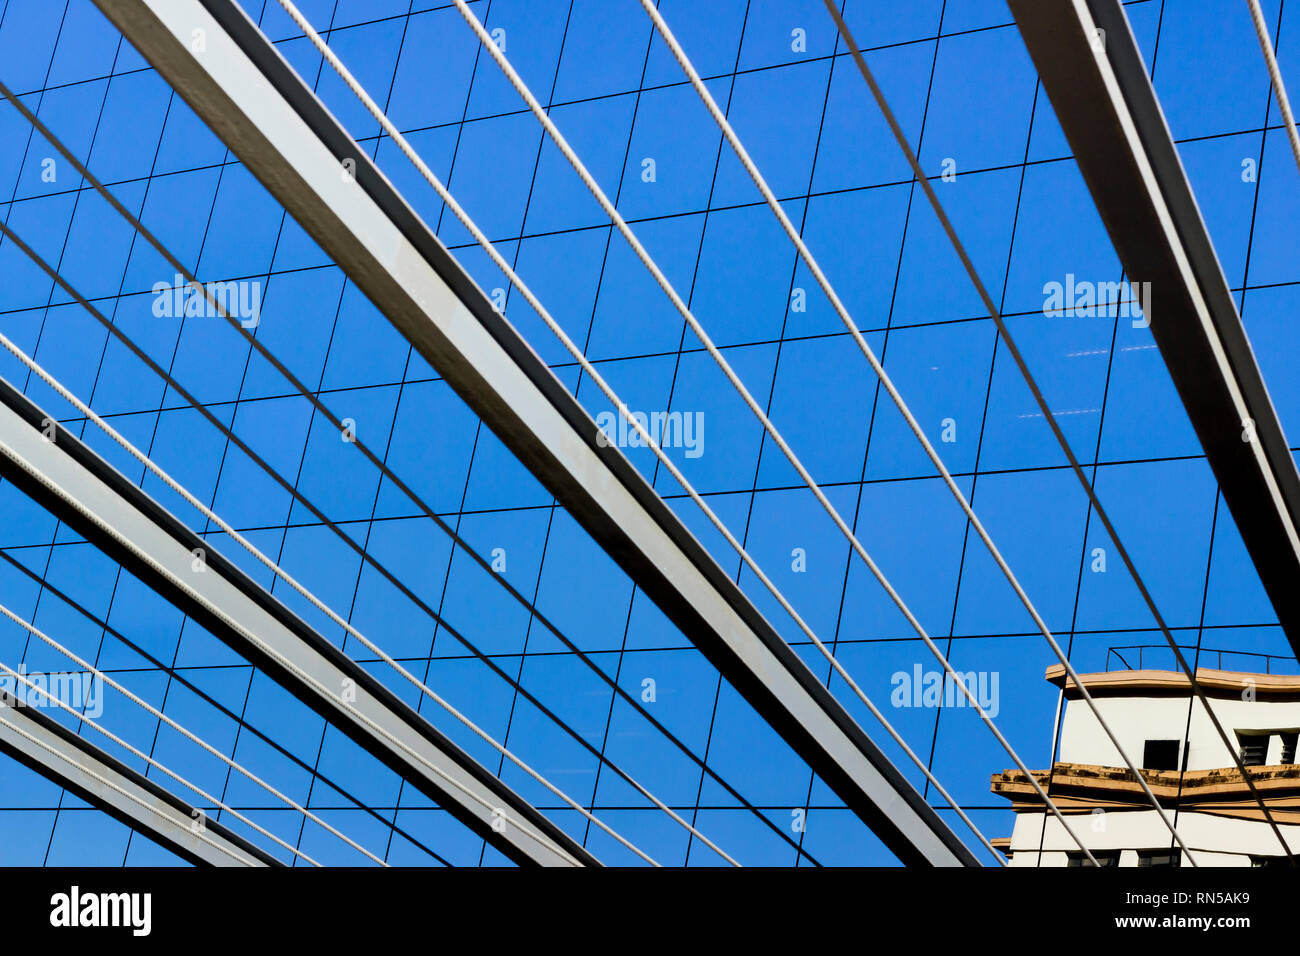 Linee grafiche di travi e cavi in acciaio si fondono con le finestre di un edificio in vetro nel centro finanziario di Rio de Janeiro, Brasile. Foto Stock